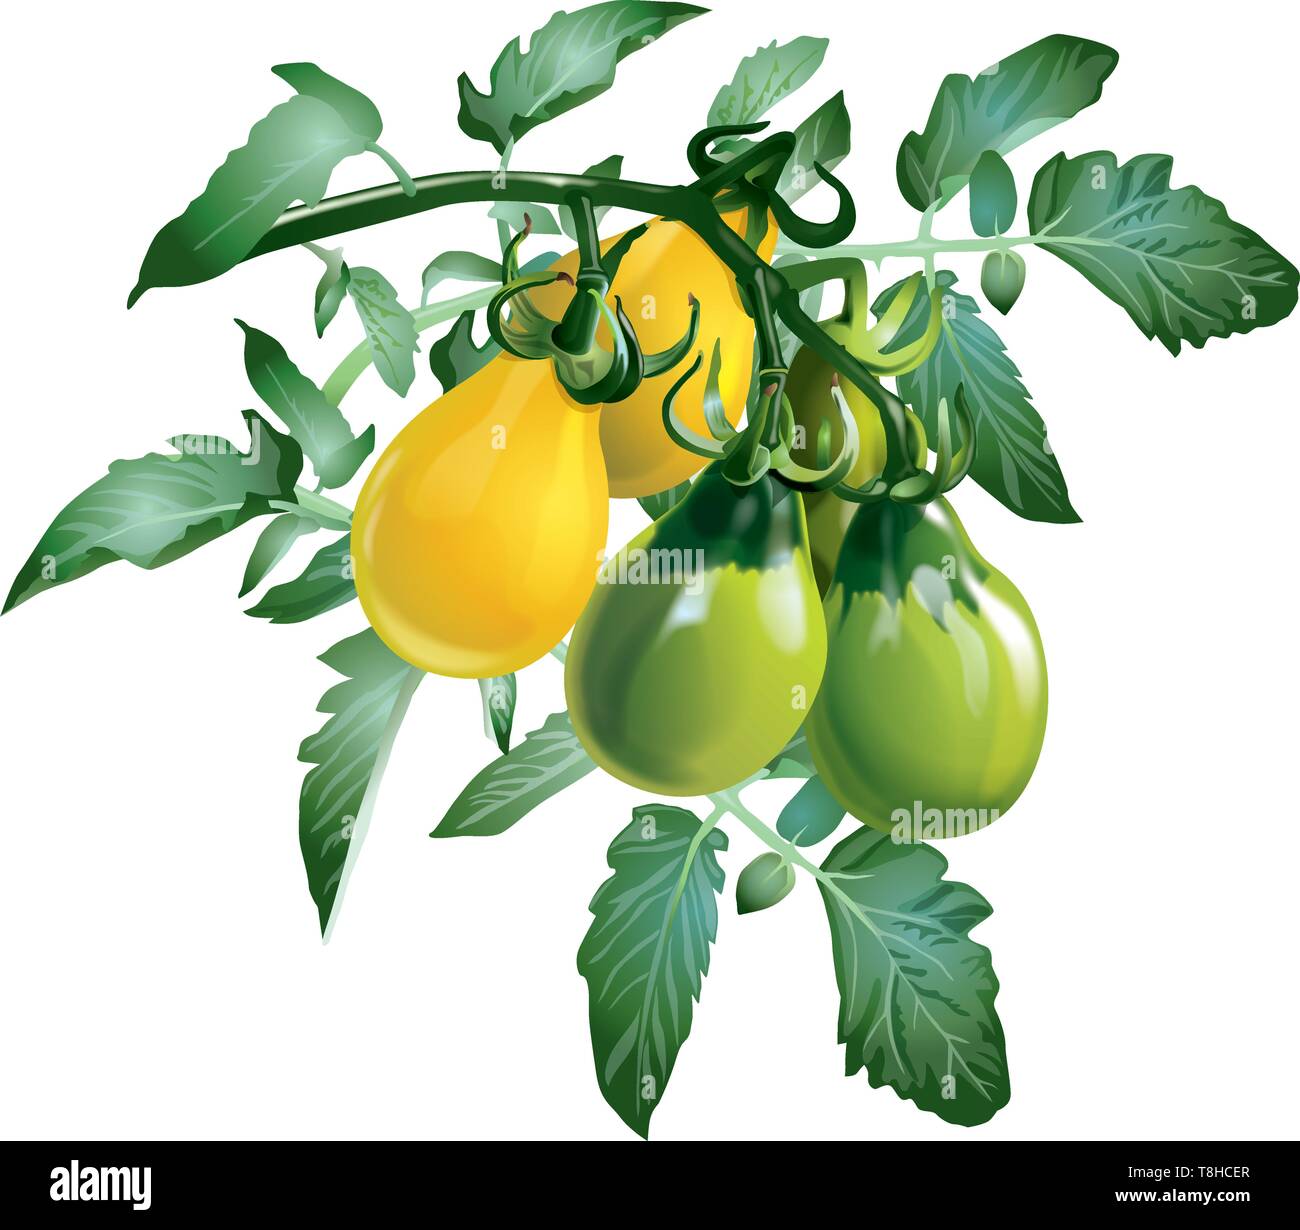 Reife, gelbe und unreife grüne Tomaten mit grünen Blättern auf einem weißen Hintergrund. Isoliert. Vektor Stock Vektor